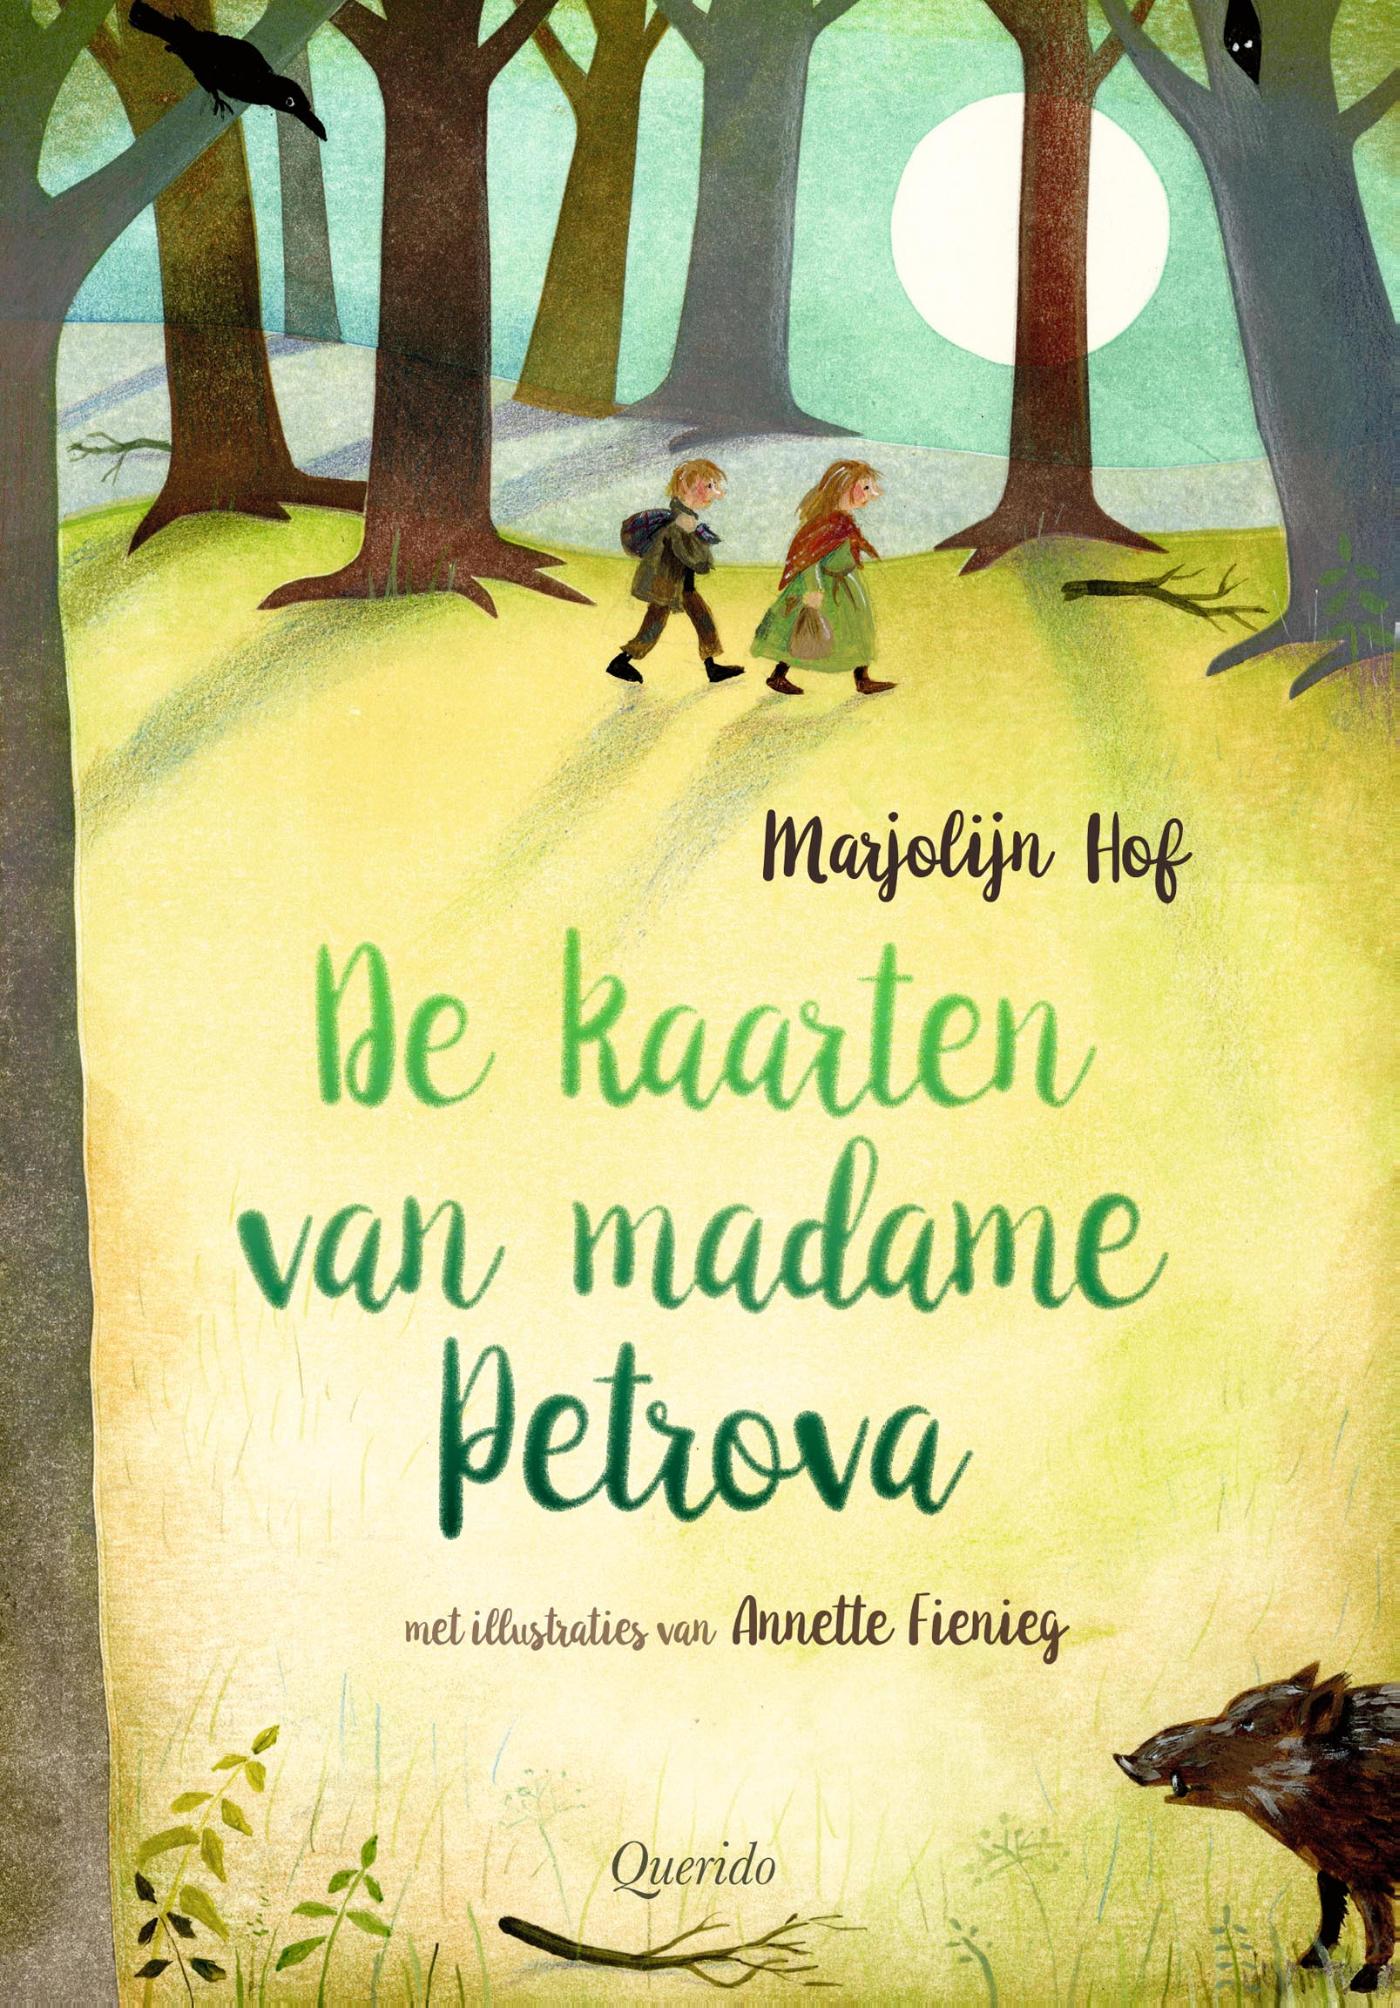 De kaarten van Madame Petrova – COVER – v2.indd